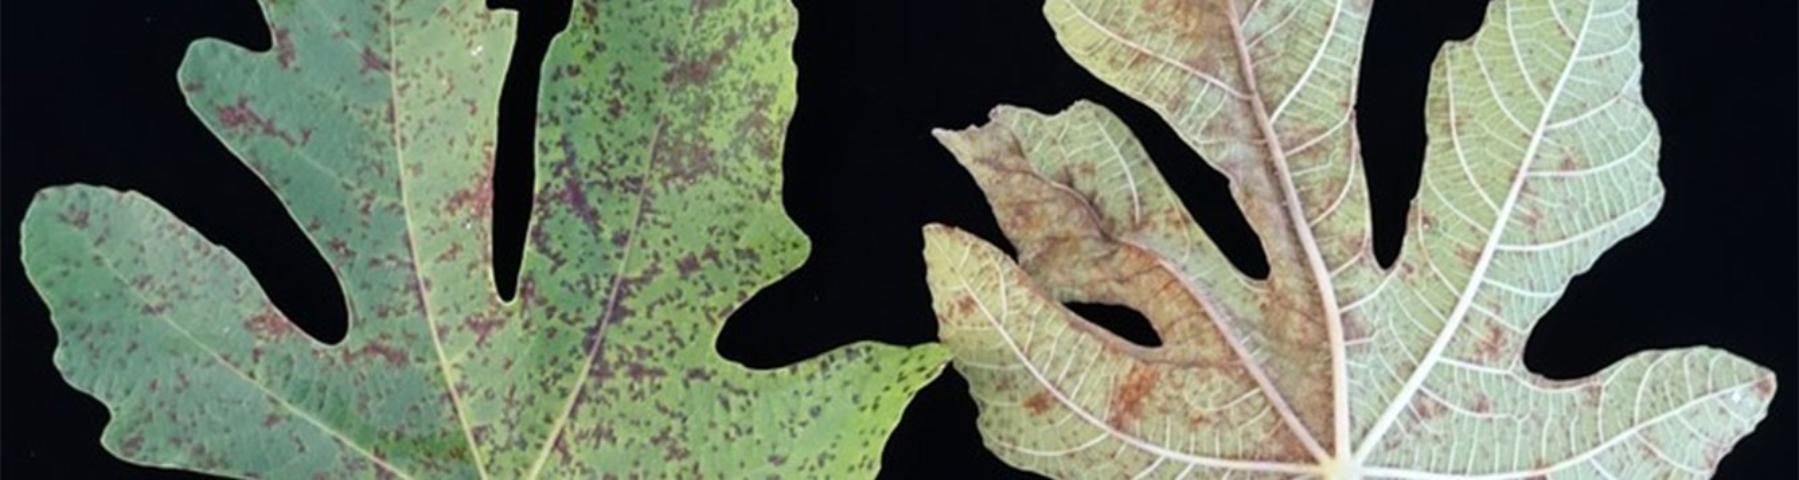 Figure 14. Fig rust on leaves.